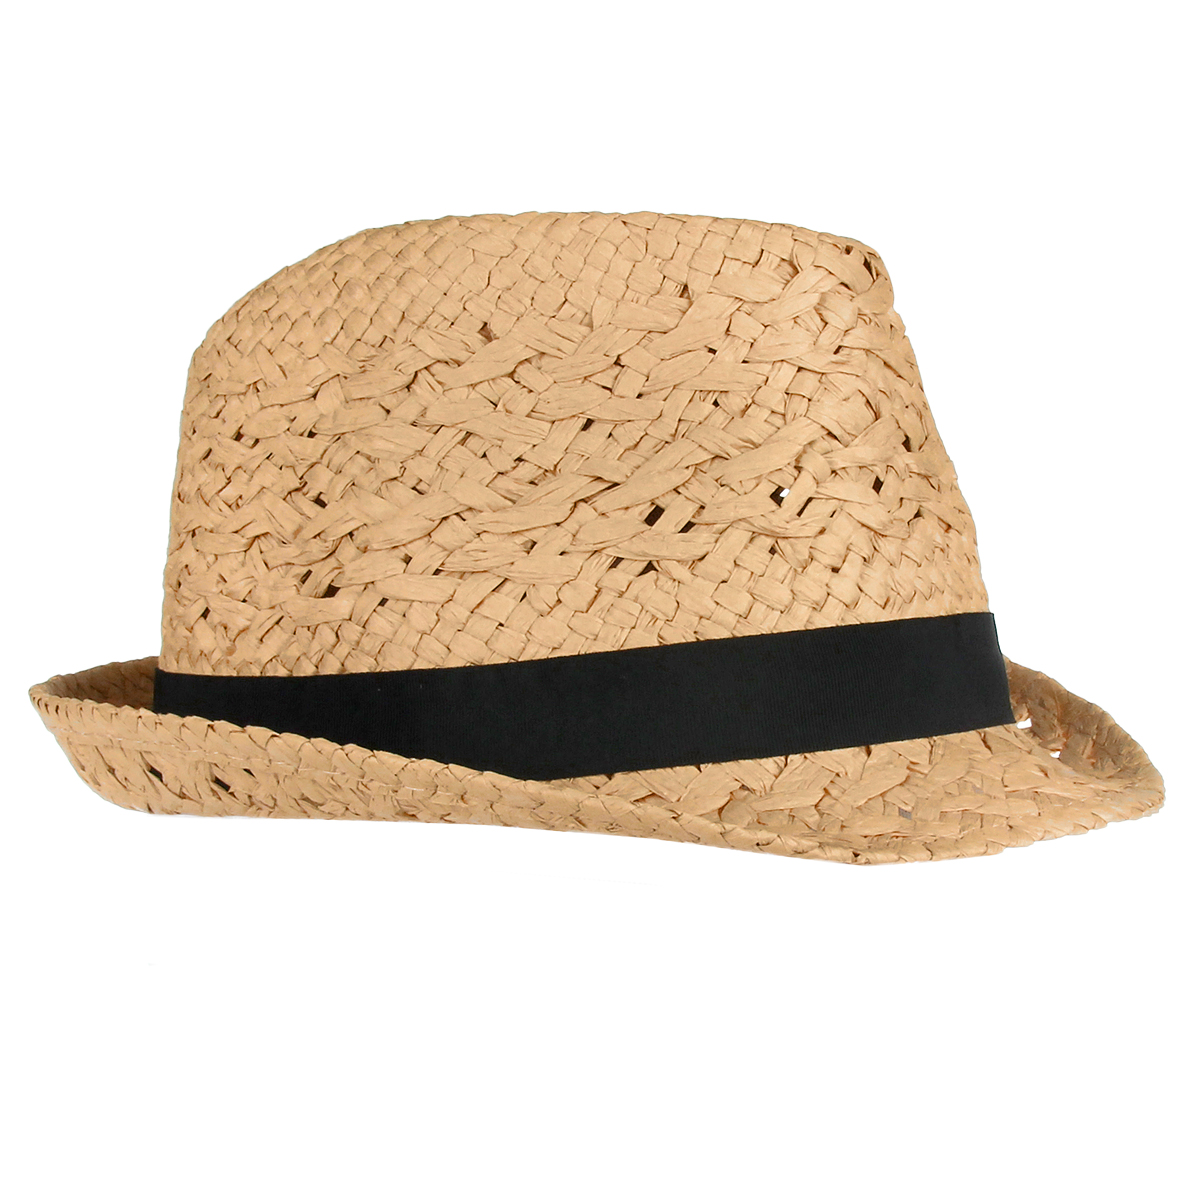 Шляпа унисекс Canoe Casa, цвет: коричневый. 1961081. Размер универсальный